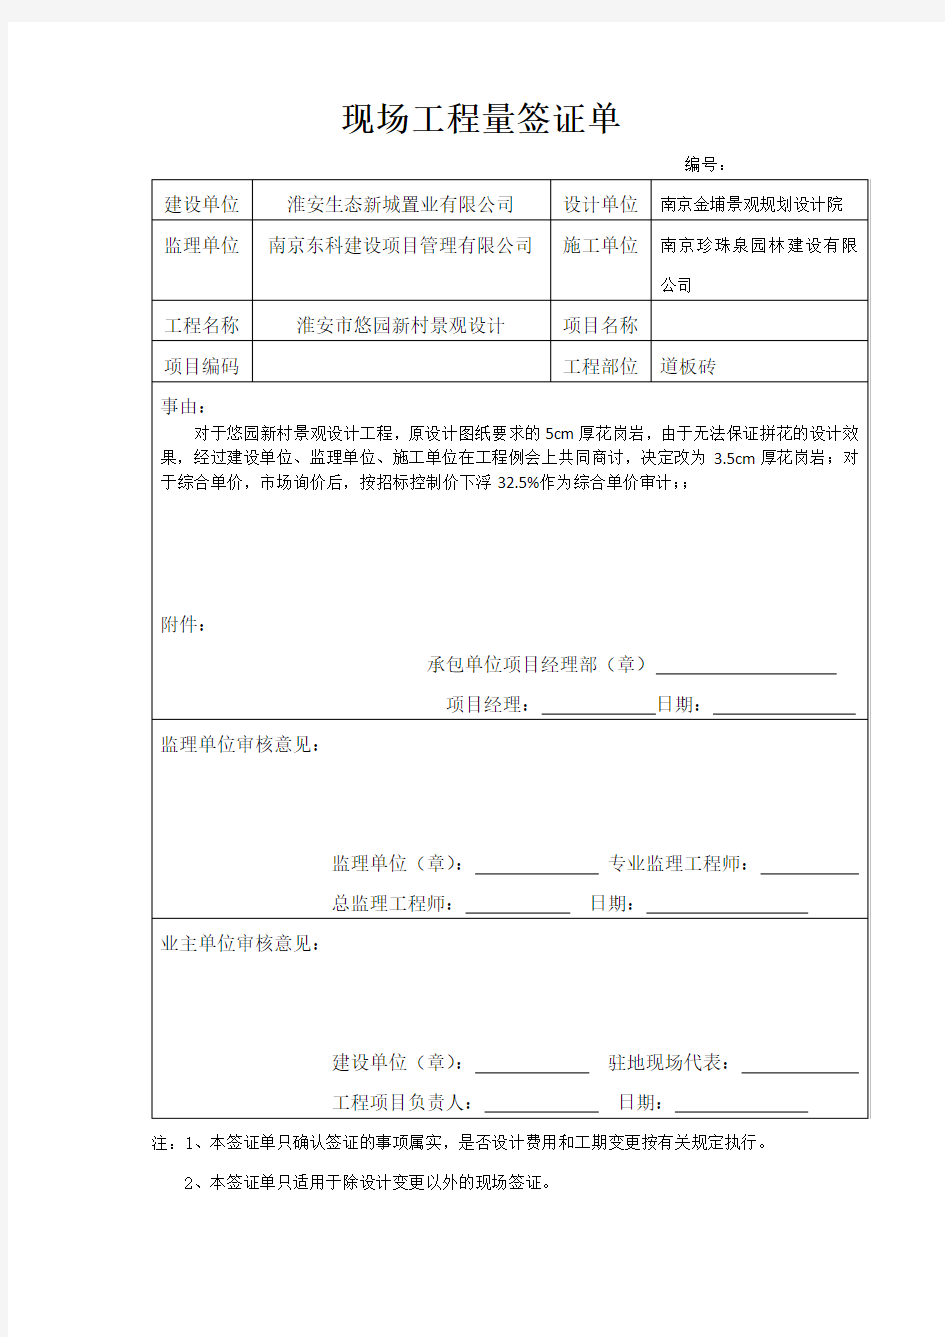 (完整版)现场工程量签证单2018年江苏